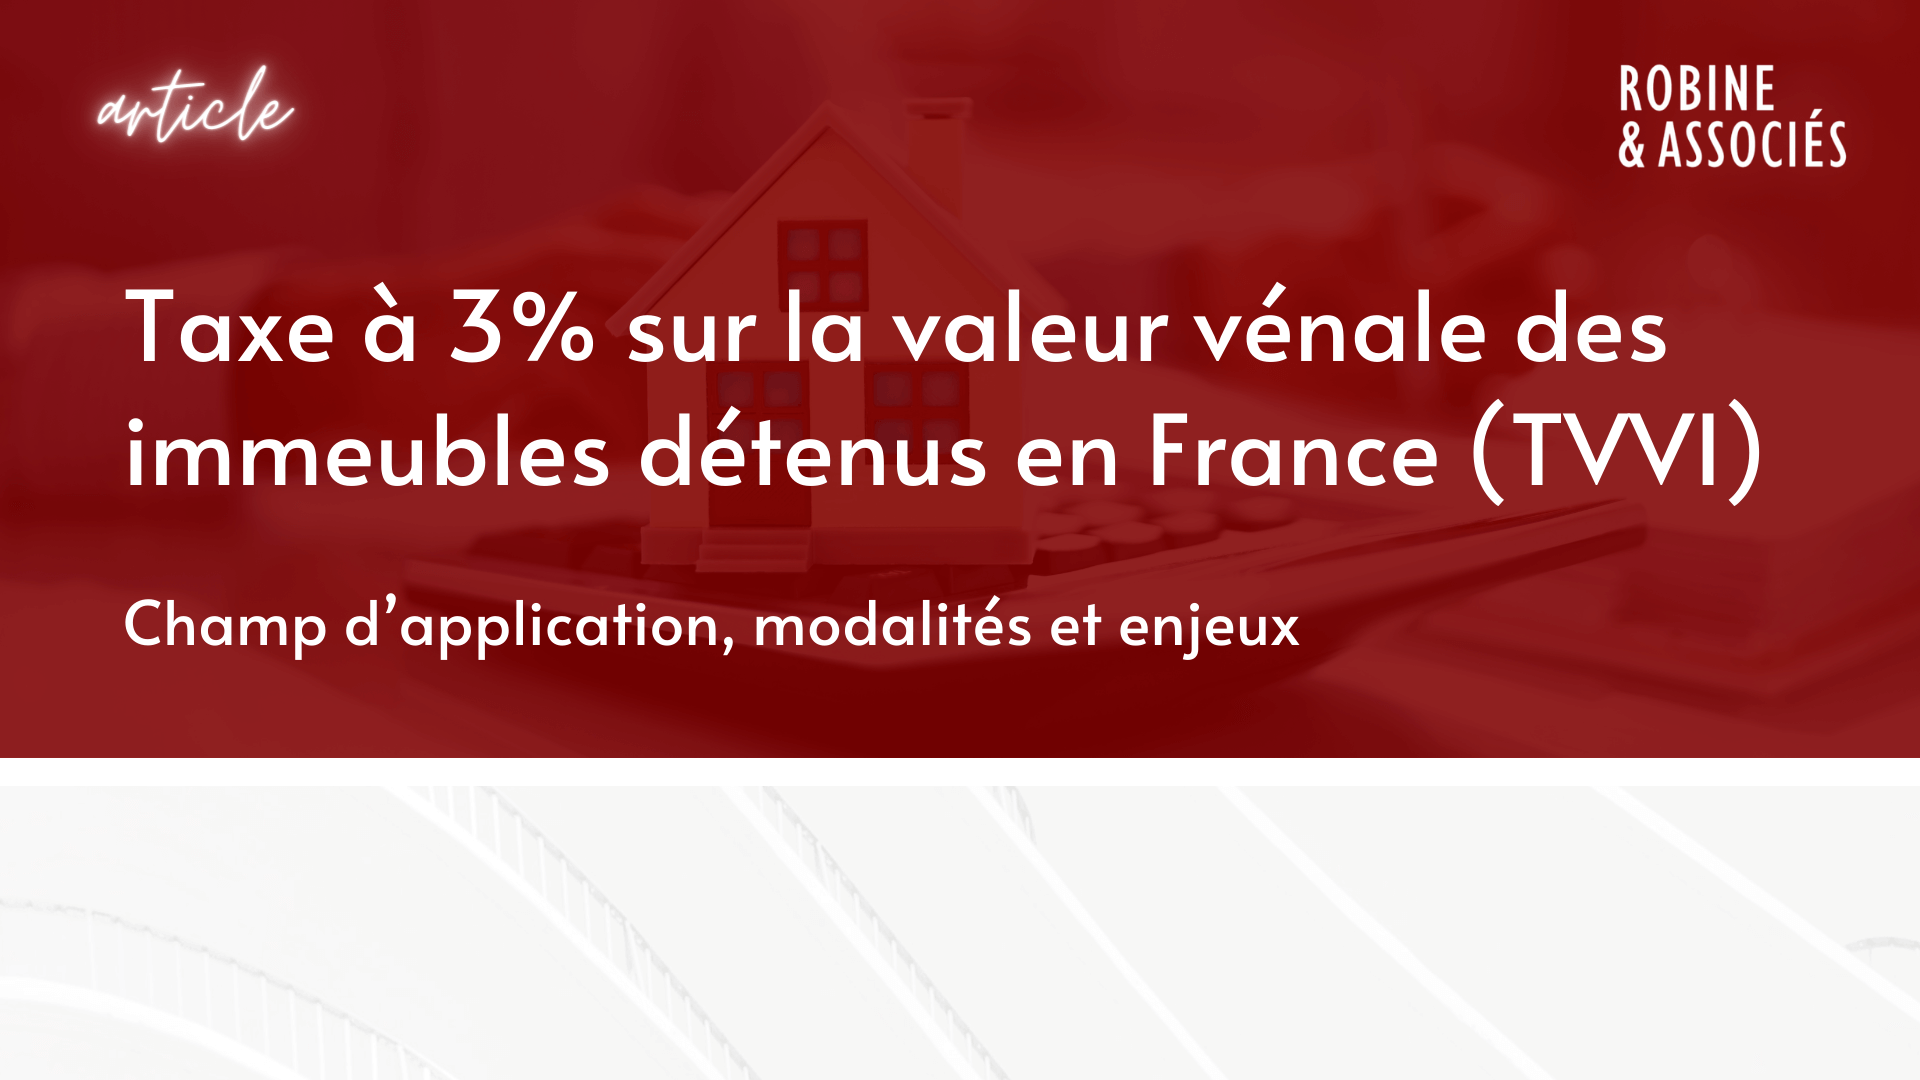 Taxe à 3% sur la valeur vénale des immeubles détenus en France (TVVI) : champ d’application, modalités et enjeux